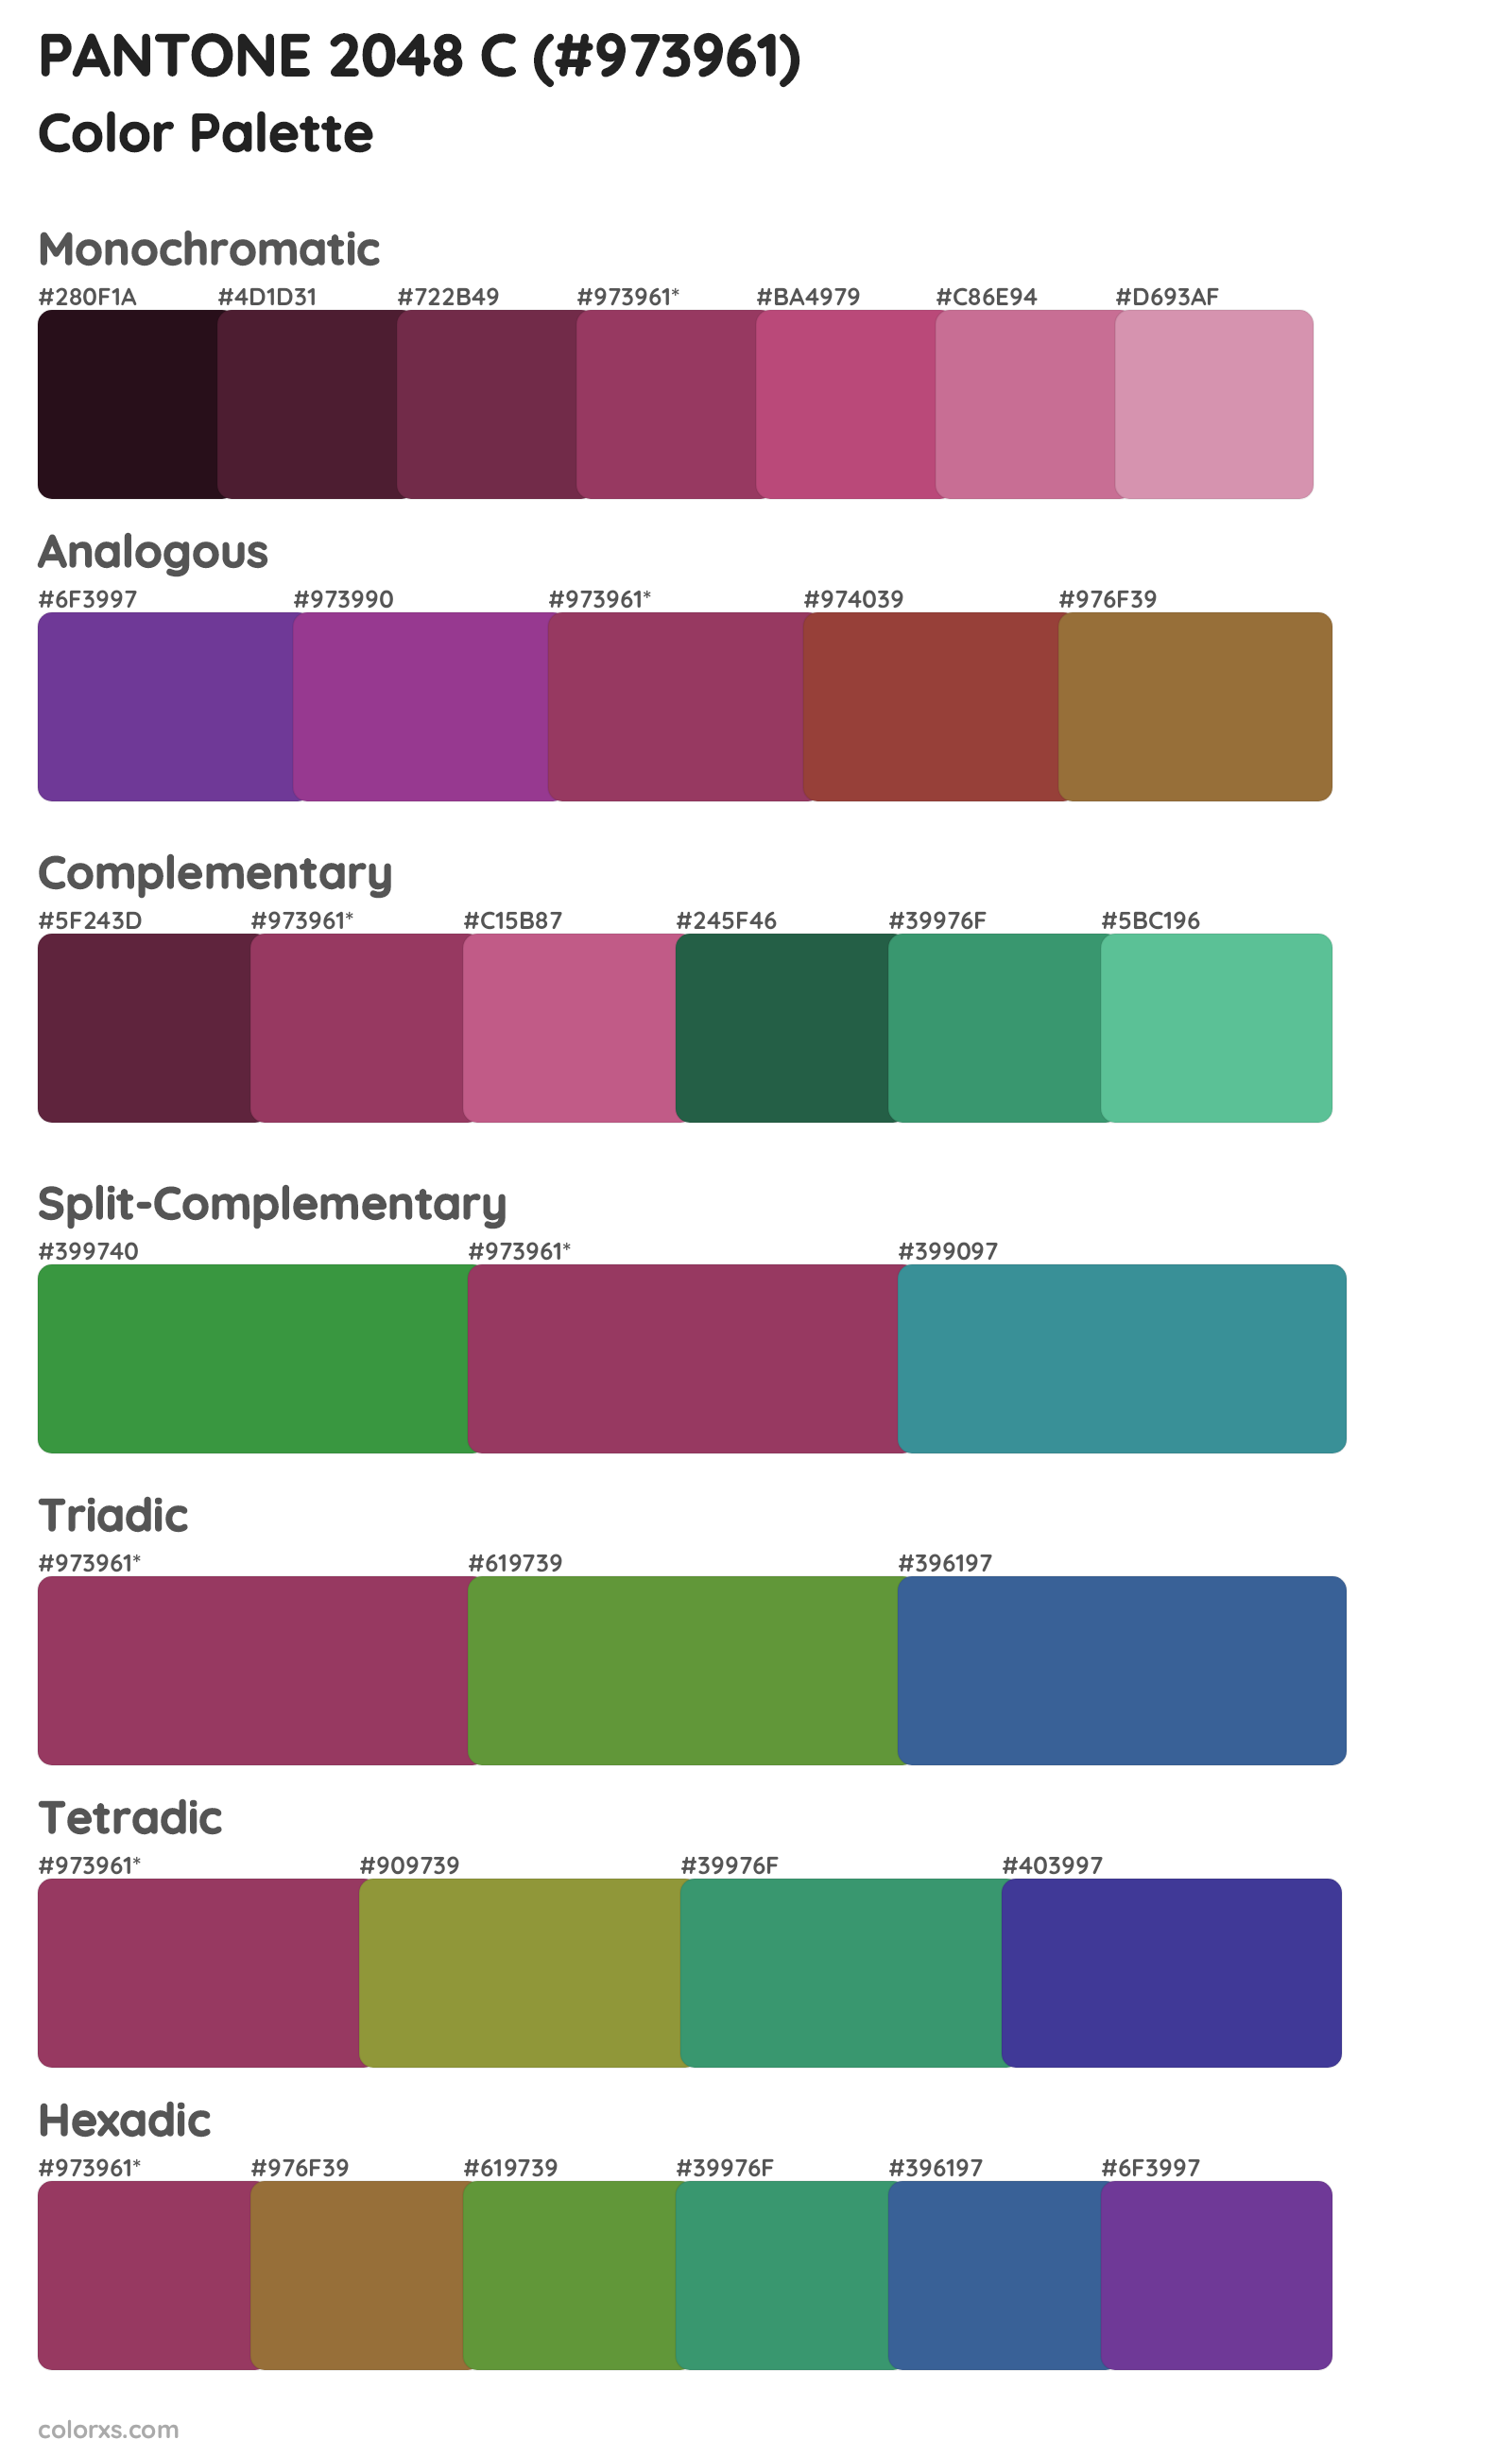 PANTONE 2048 C Color Scheme Palettes